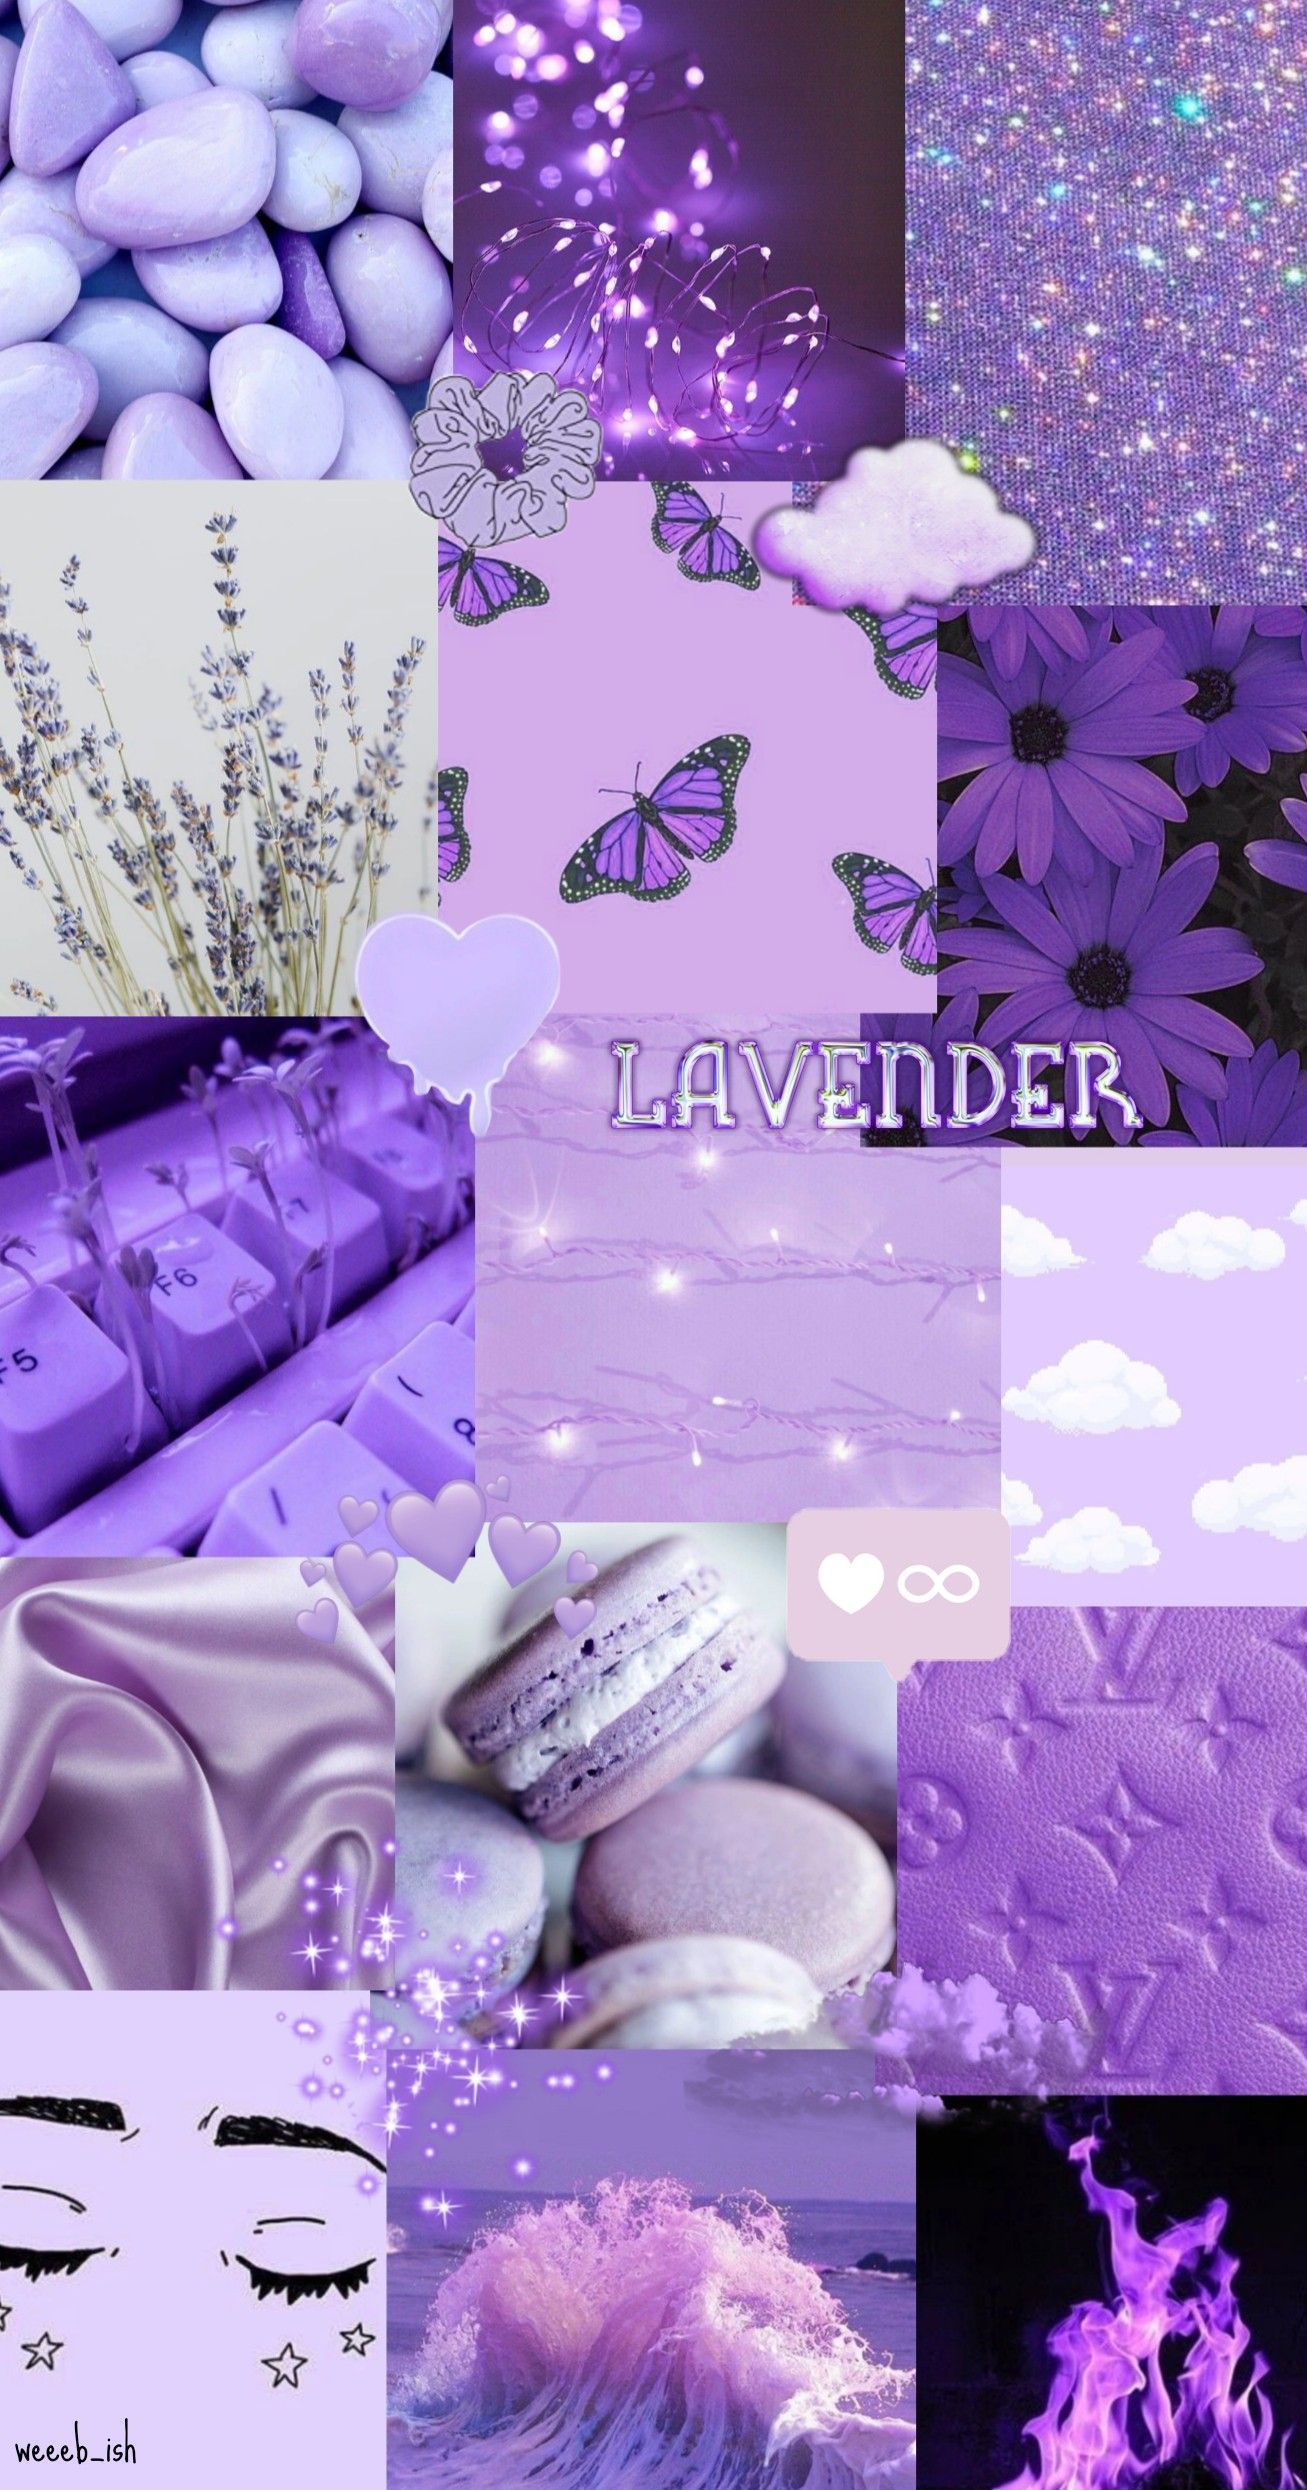 Lavender aesthetic wallpaper